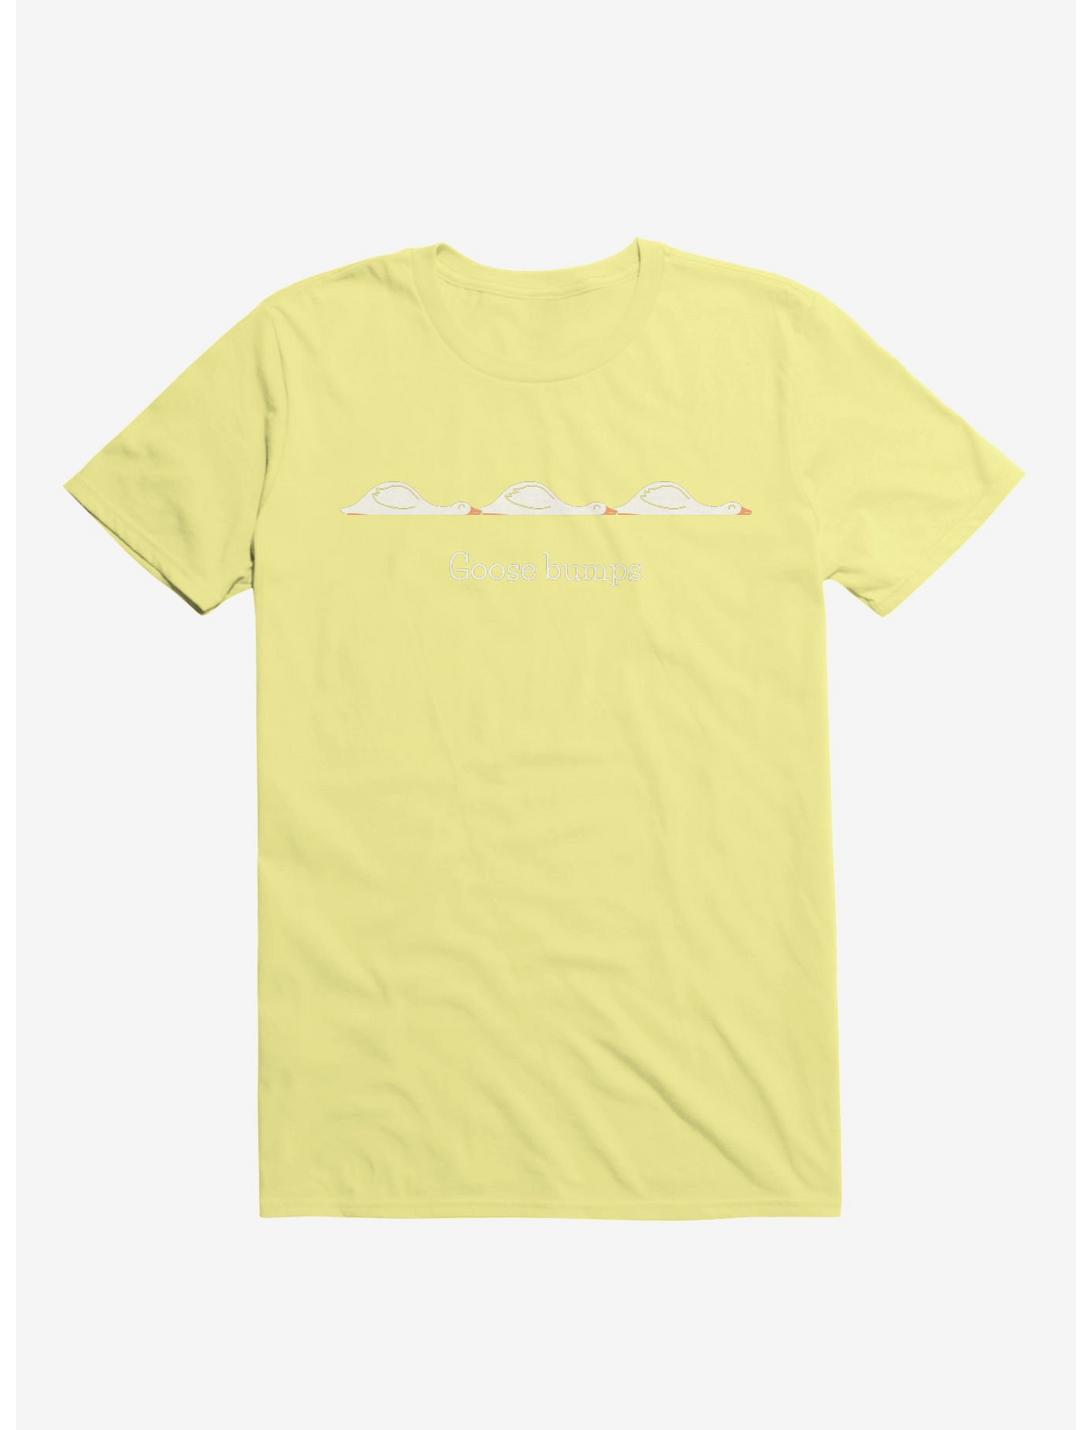 Goose Bumps Corn Silk Yellow T-Shirt, CORN SILK, hi-res